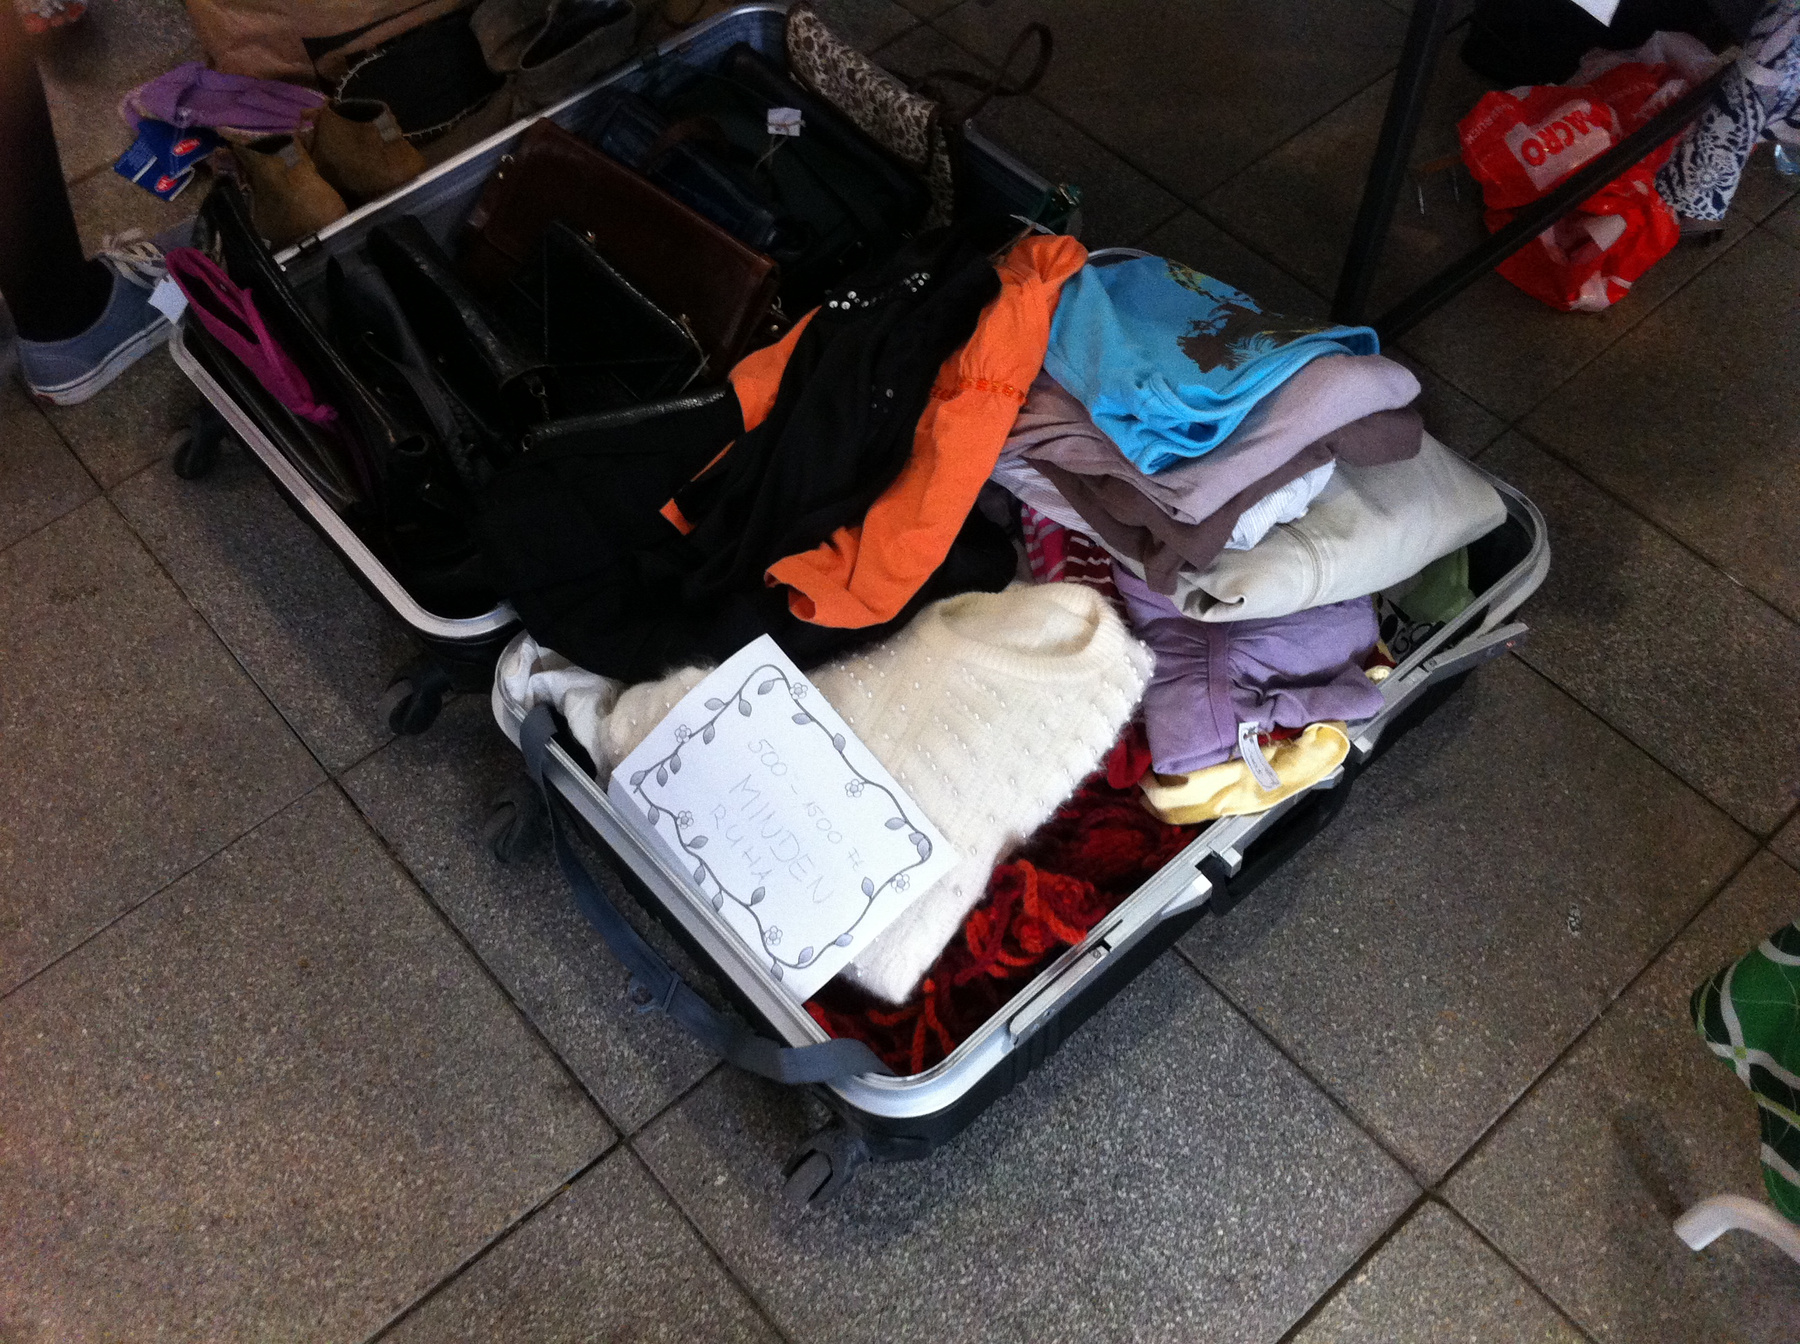 A megmaradt ruhákat a Central Passage végén gyűjtötték össze adománynak.